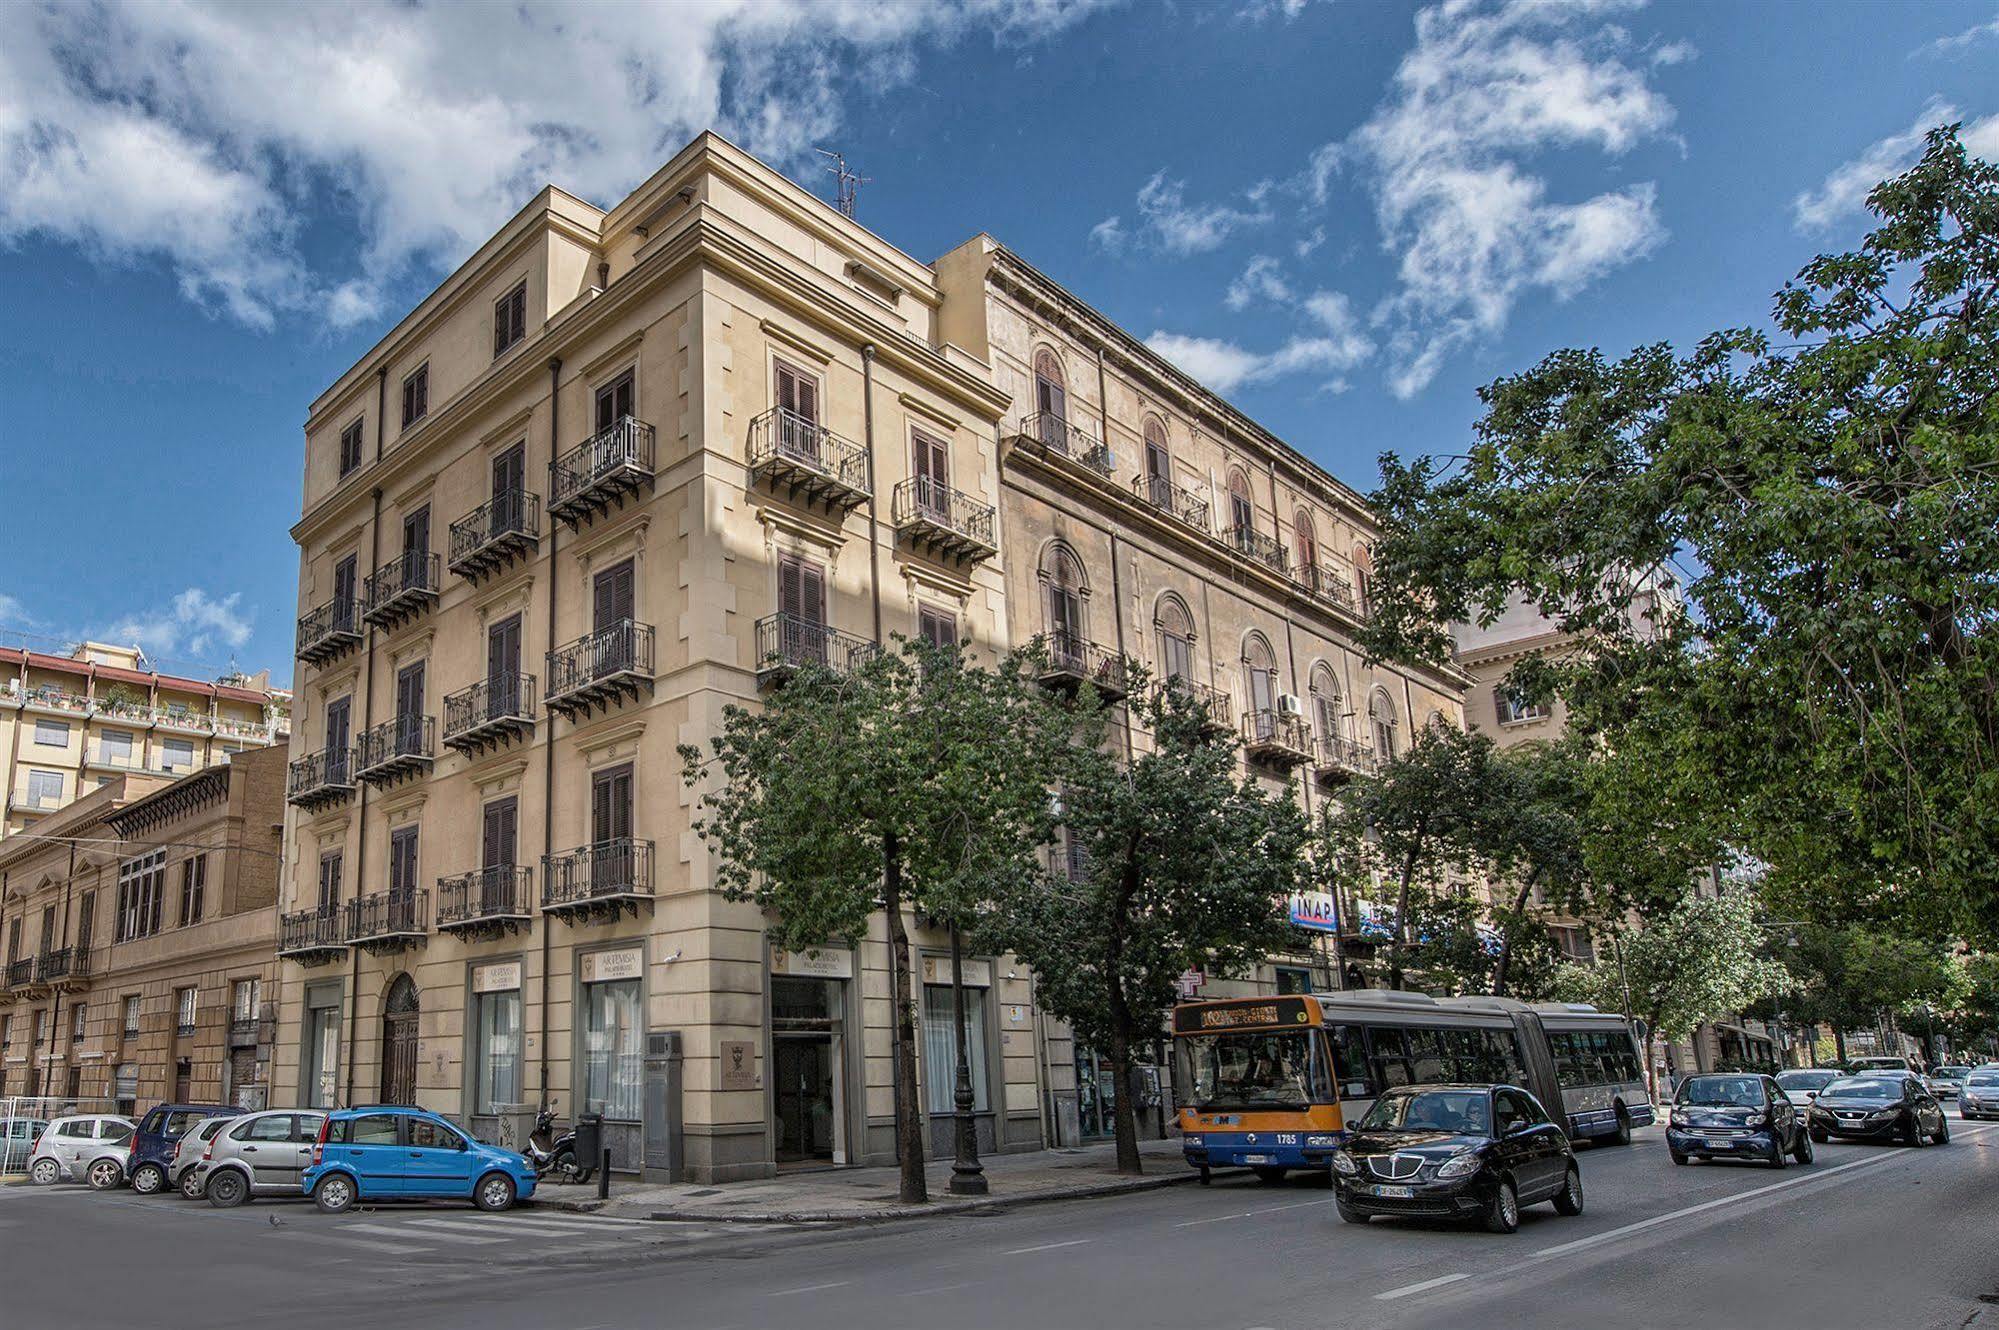 Artemisia Palace Hotel Palermo Eksteriør bilde